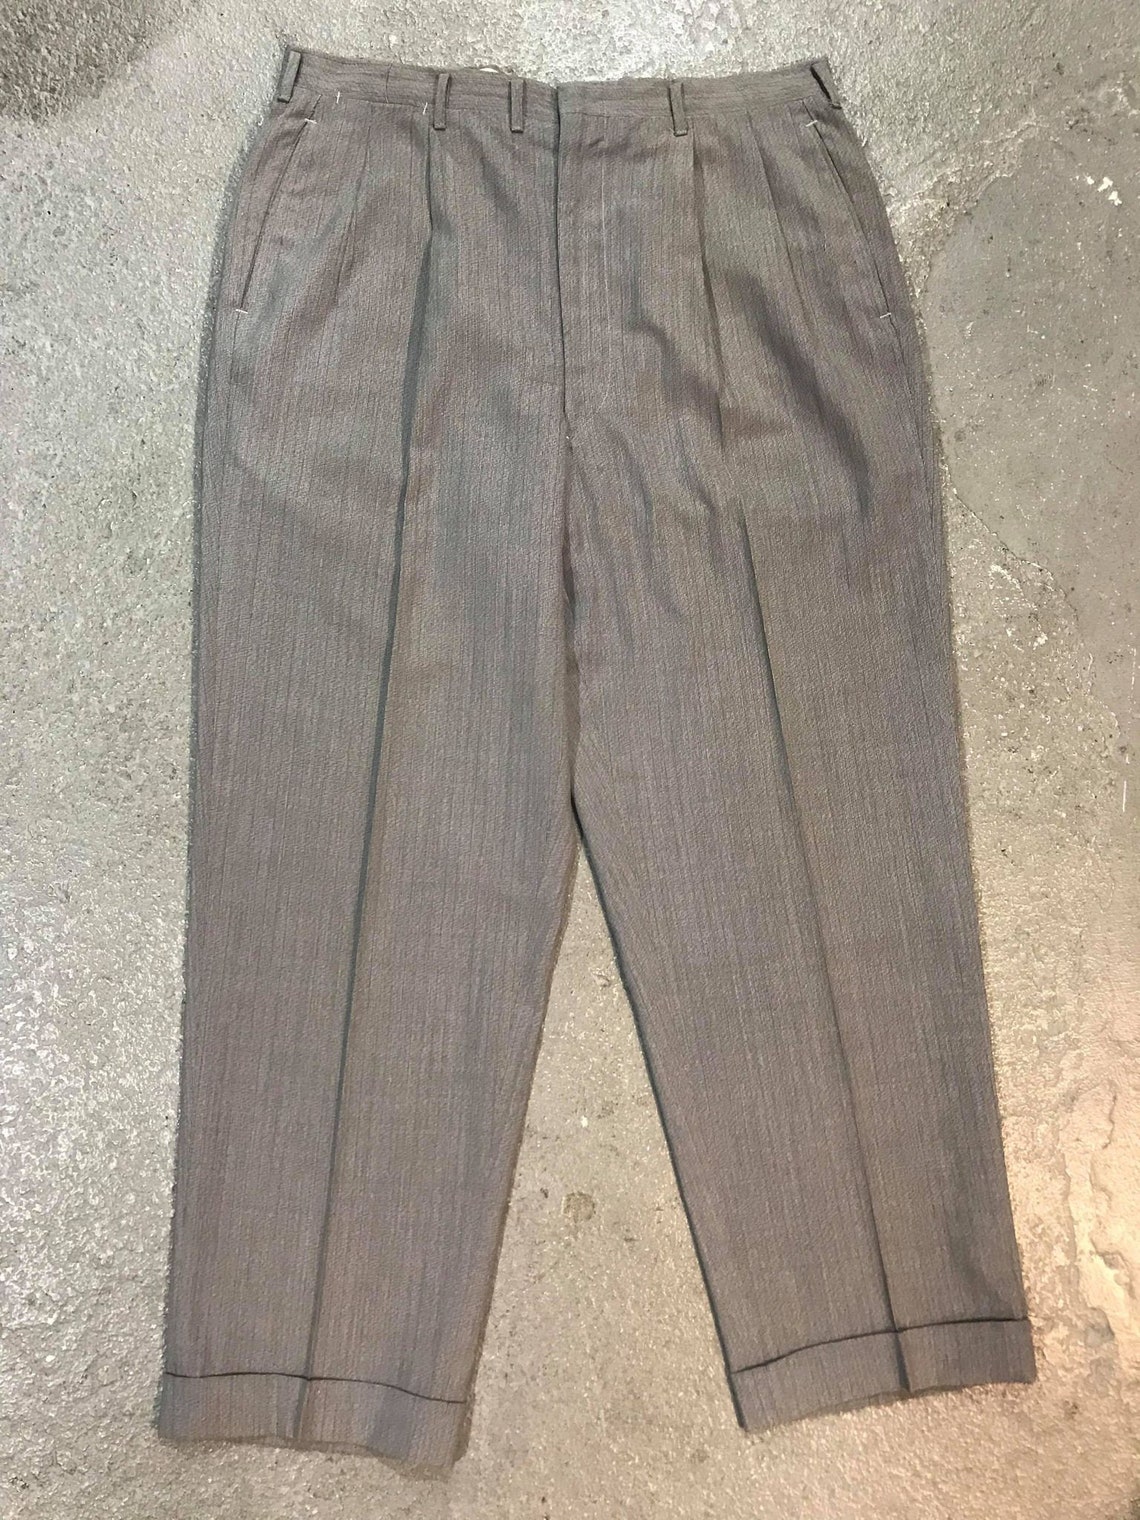 Vintage 40s 50s Men's Trousers W 36 | Etsy